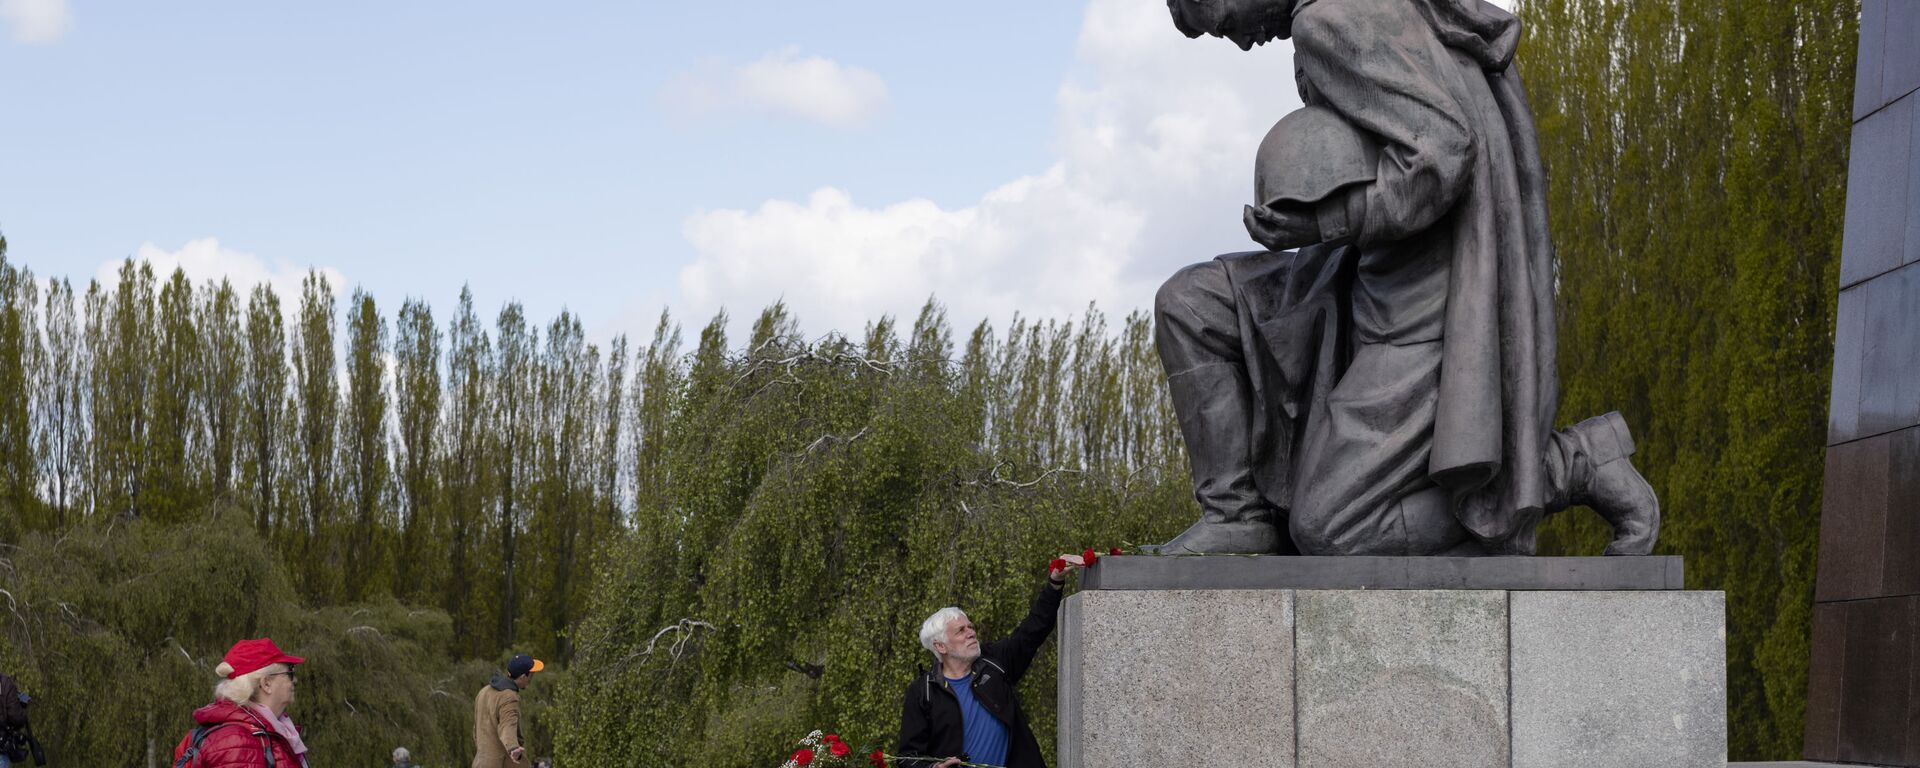 Мужчина возлагает цветы к памятнику советскому солдату на военном мемориале в Трептов-парке в Берлине в ознаменование 76-й годовщины окончания Второй мировой войны - Sputnik Mundo, 1920, 18.04.2022